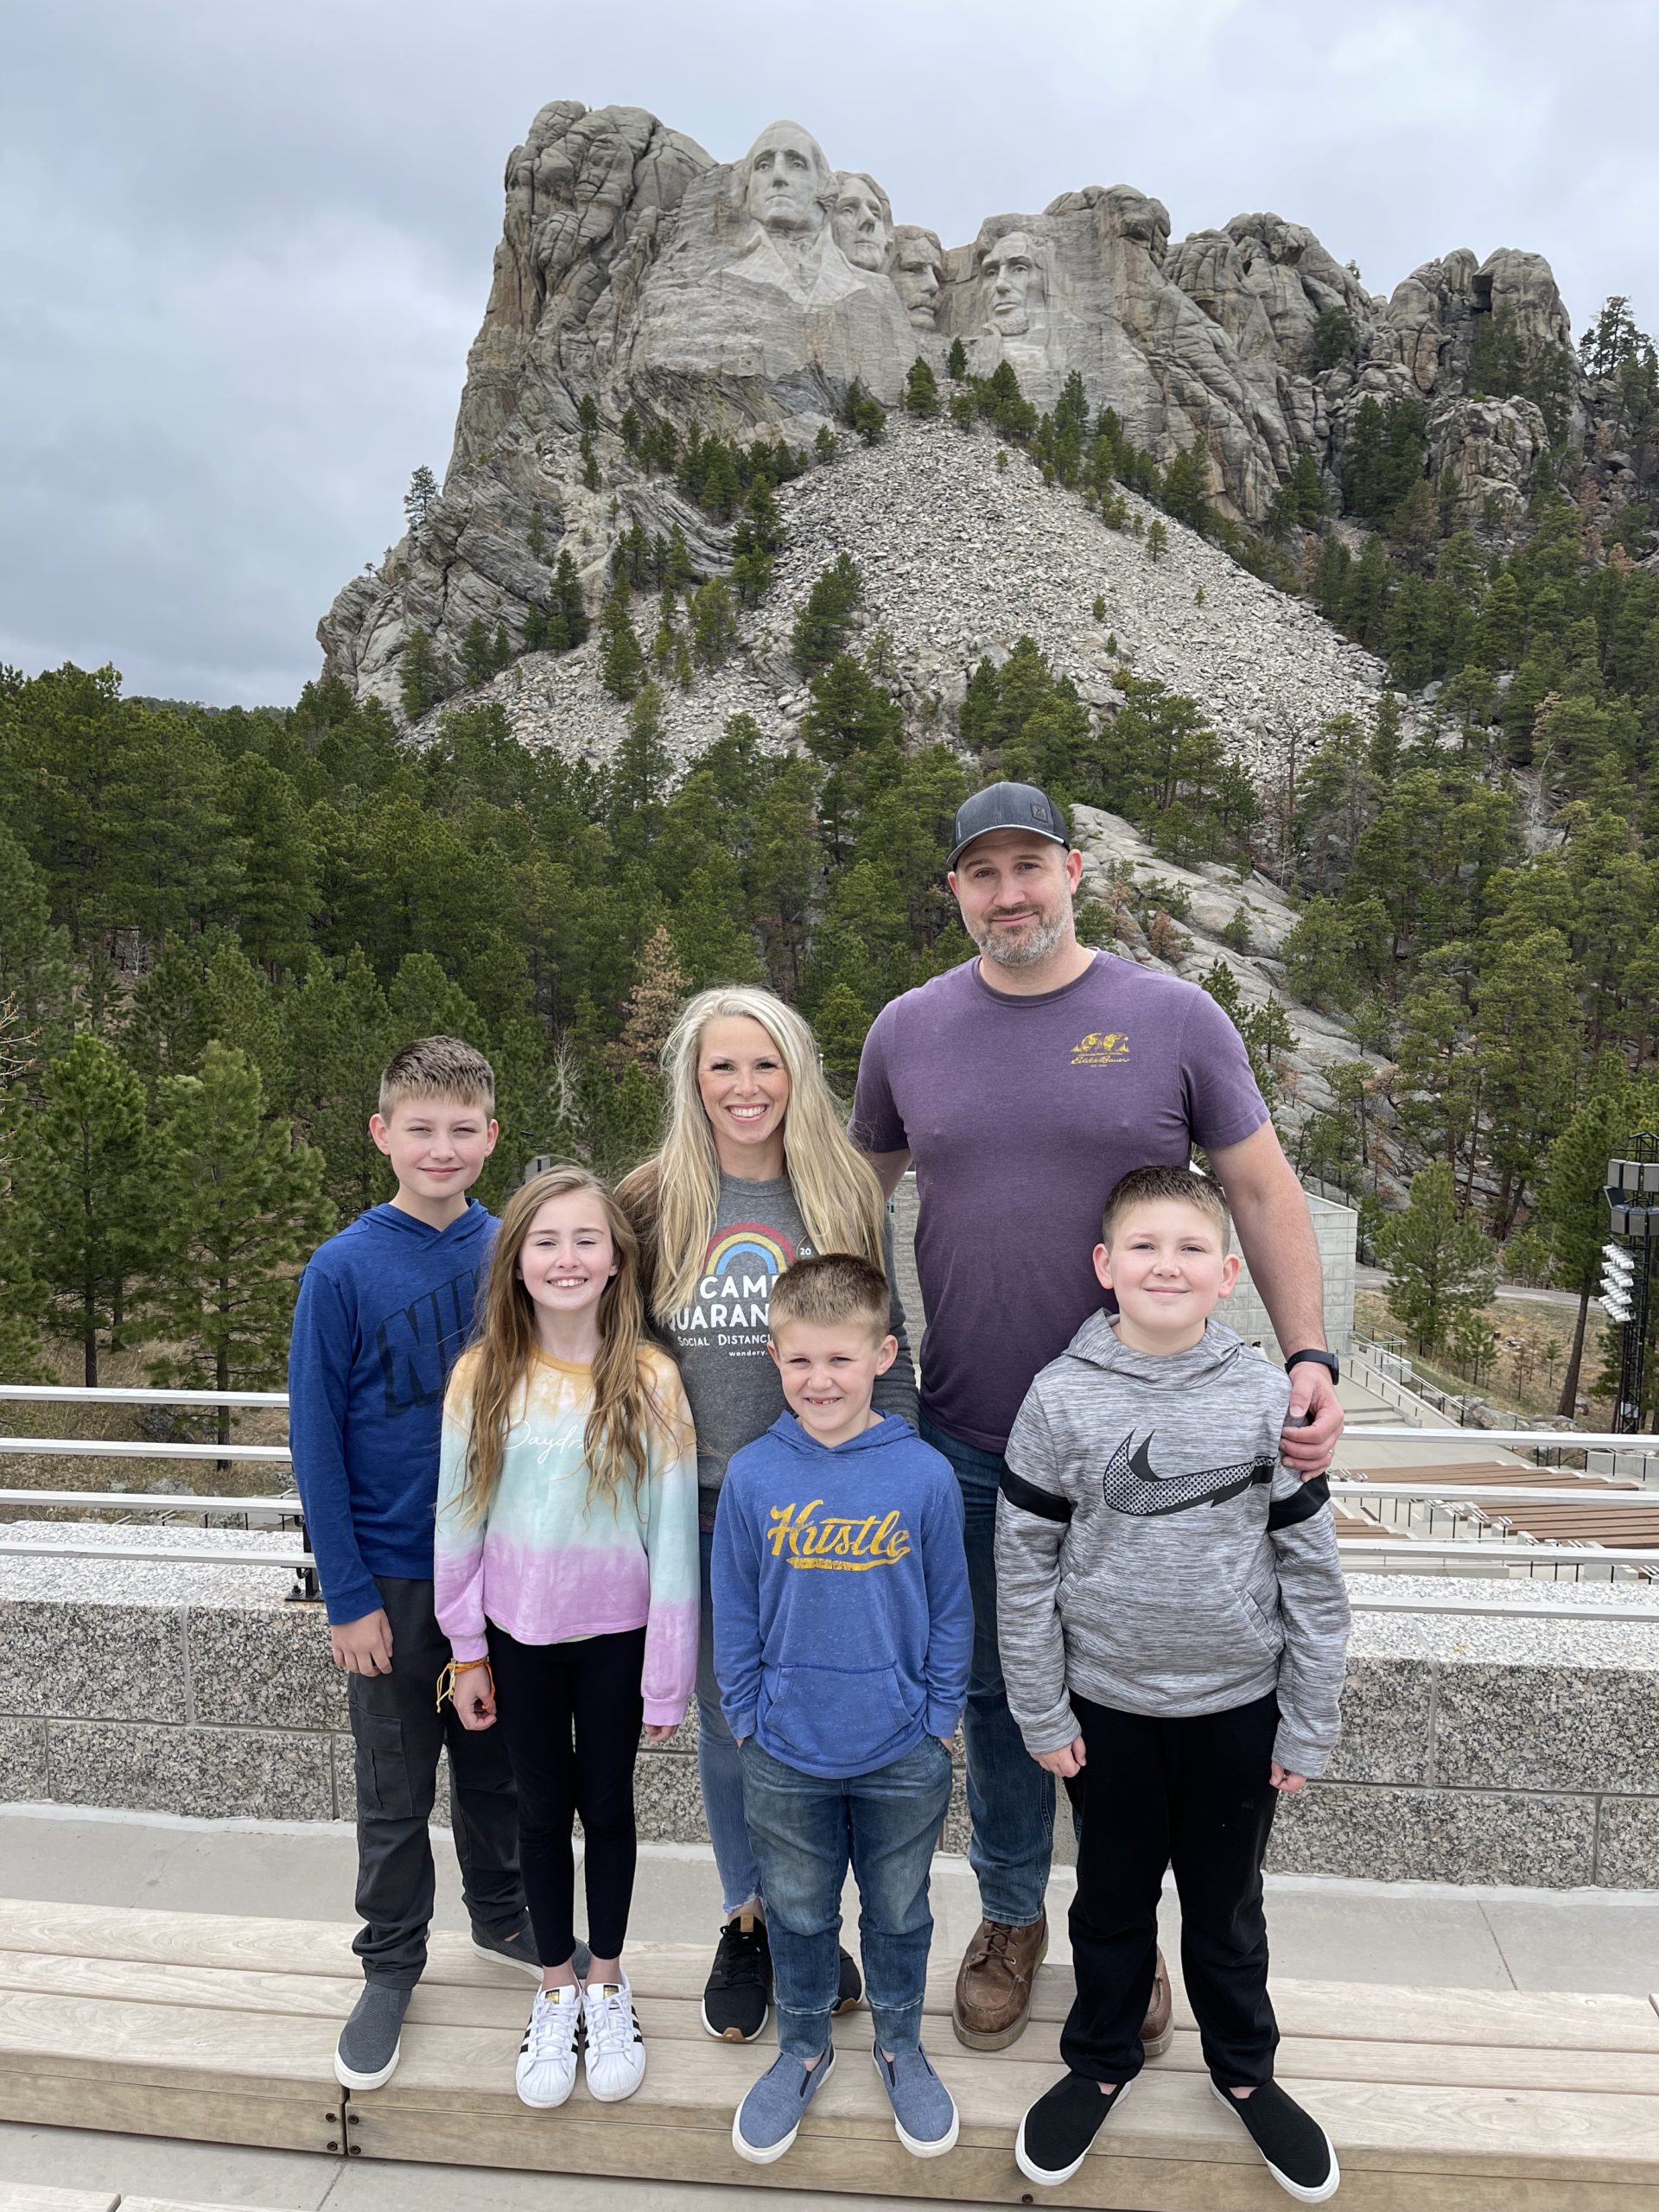 Mount Rushmore Tips & Tricks